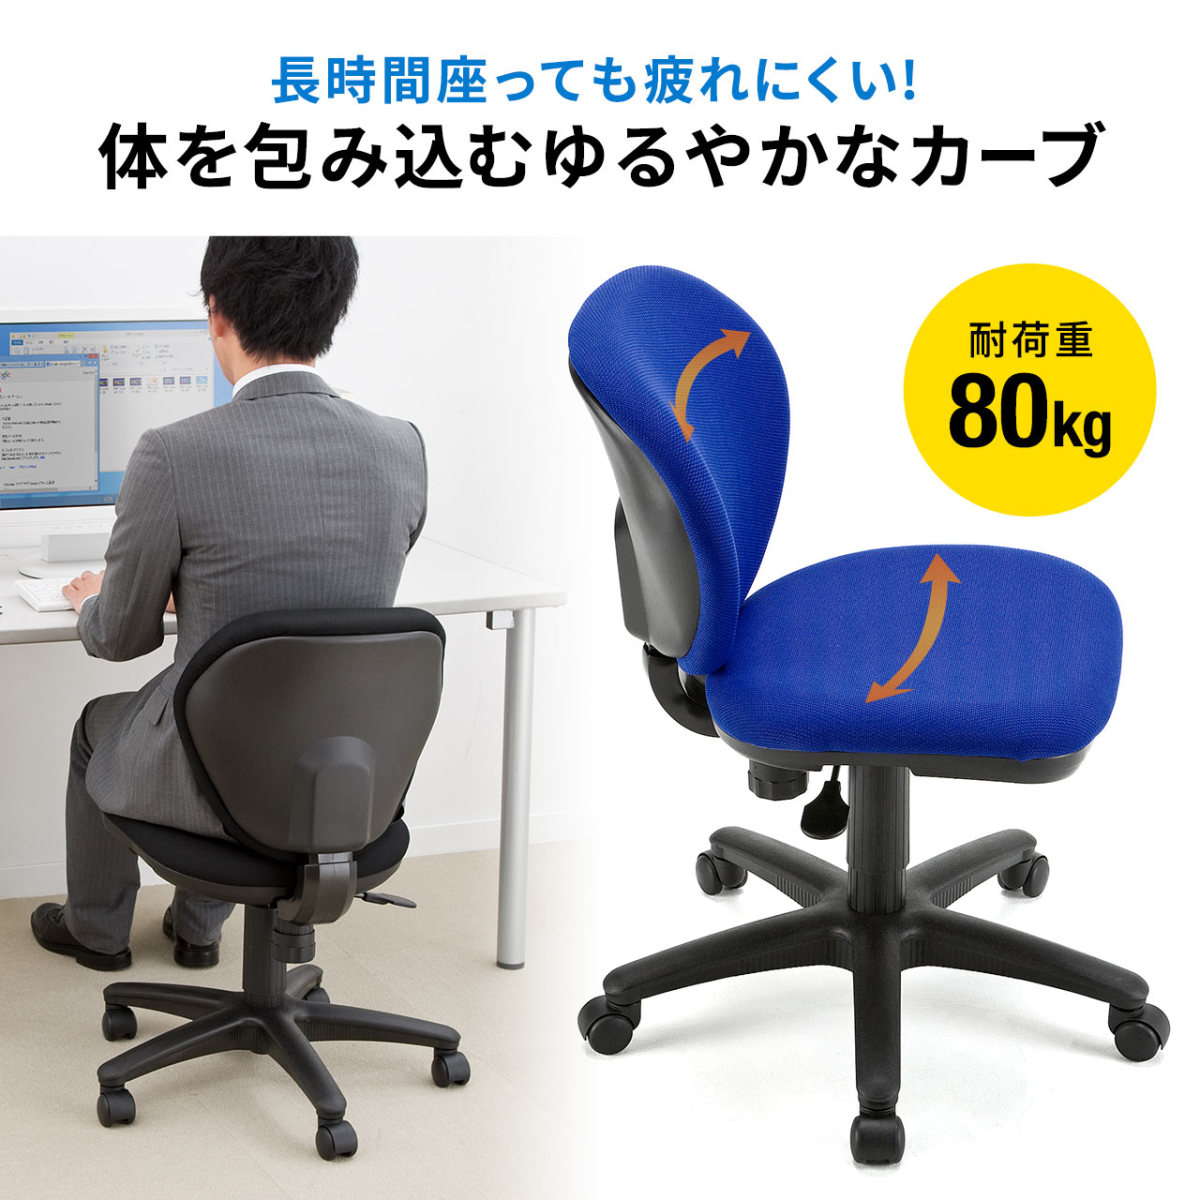 オフィスチェア パソコンチェア 事務椅子 学習 オフィスチェアー デスクチェア 椅子 チェア チェアー イス いす オフィス 5脚セット  100-SNC025-5